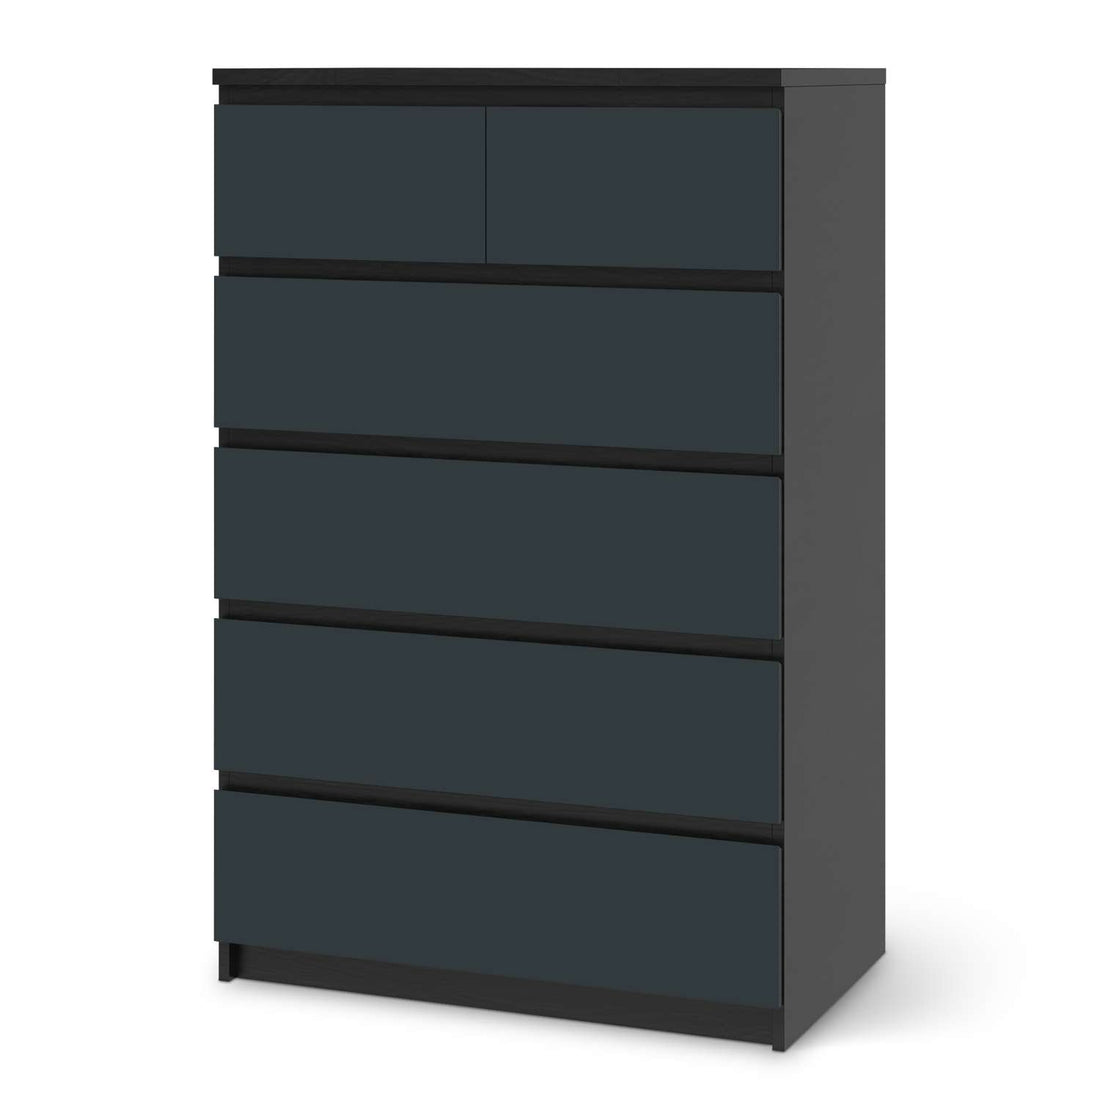 Möbel Klebefolie Blaugrau Dark - IKEA Malm Kommode 6 Schubladen (hoch) - schwarz